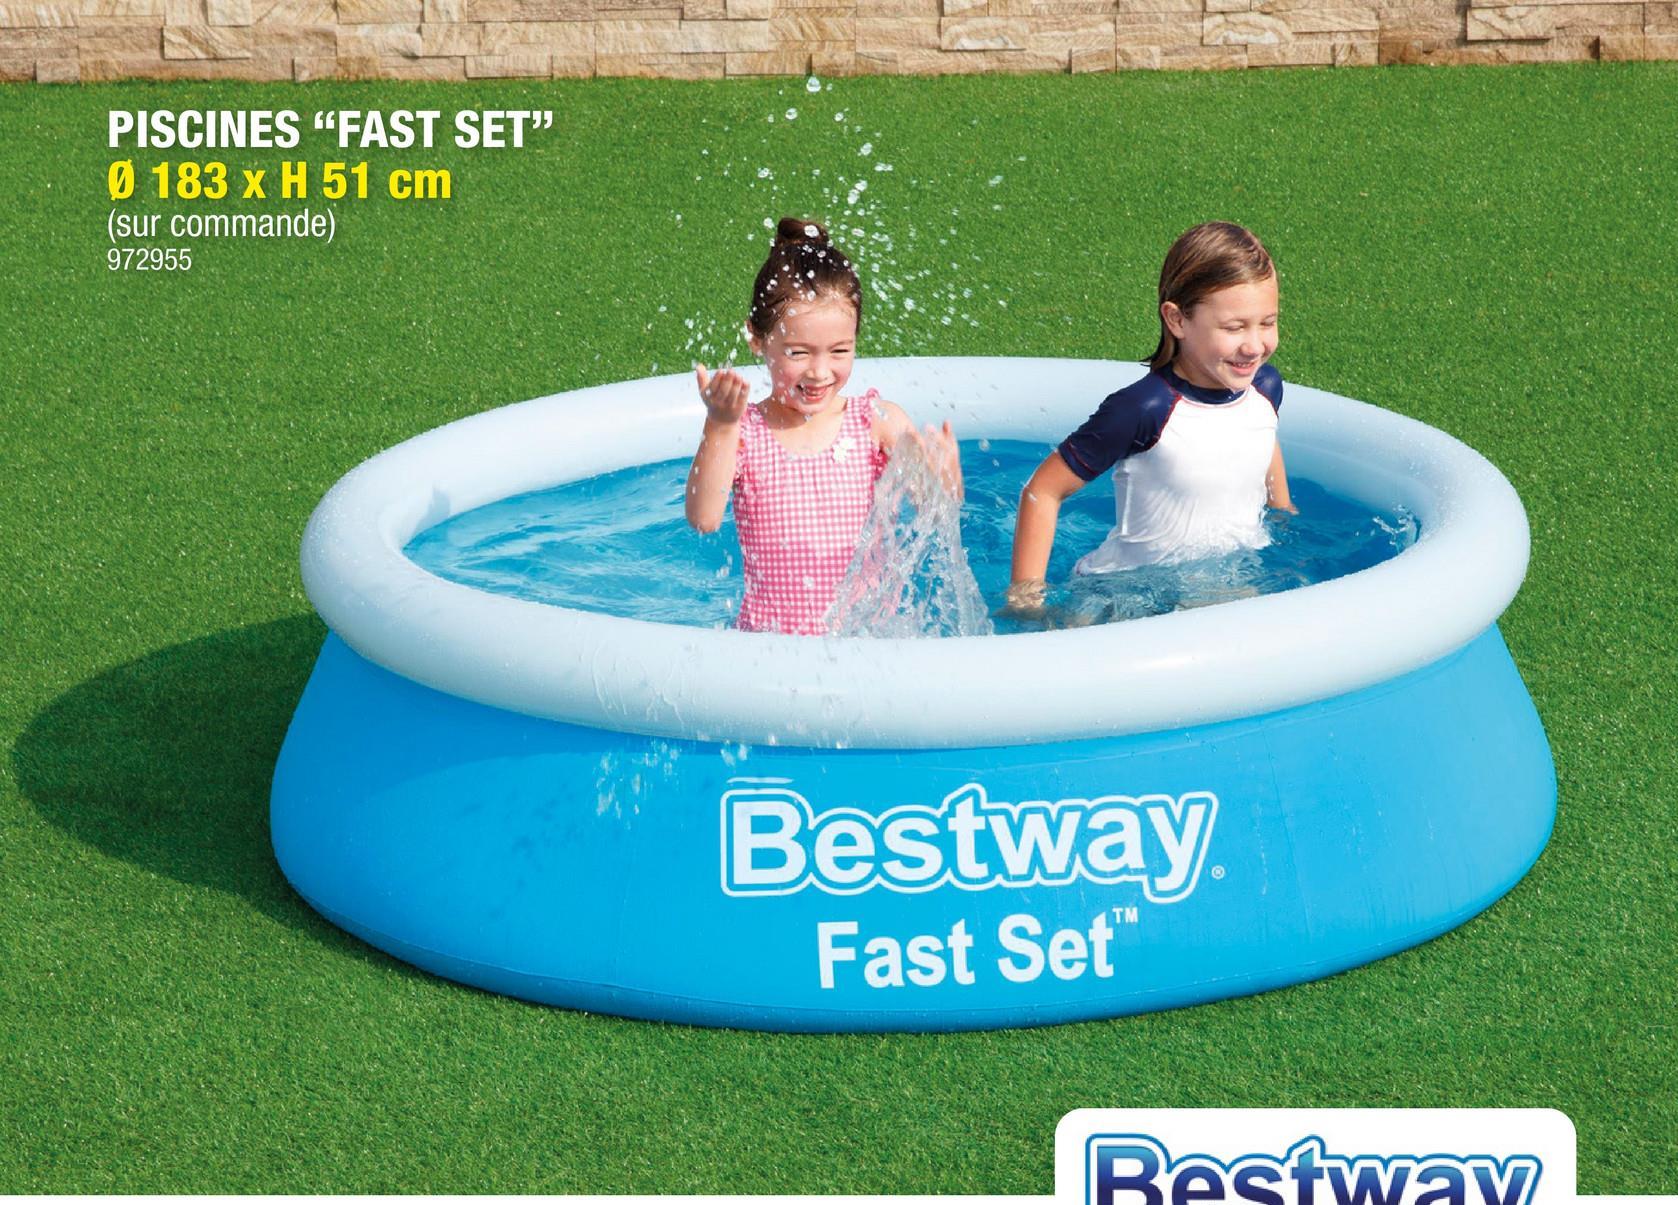 Bestway Fast Set piscine 183x51 cm <p>Profitez du beau temps dans votre jardin avec la piscine ronde gonflable Fast Set de Bestway, l'endroit parfait pour se rafra&icirc;chir pour vous et votre famille. Il suffit de gonfler l'anneau supérieur puis de le remplir d'eau, et l'installation se fait en 10 minutes.</p>Doublure en matériau Tritech: 3 couches de PVC et de polyester résistant Capacité en eau 940l Patch de réparationPompe non incluse